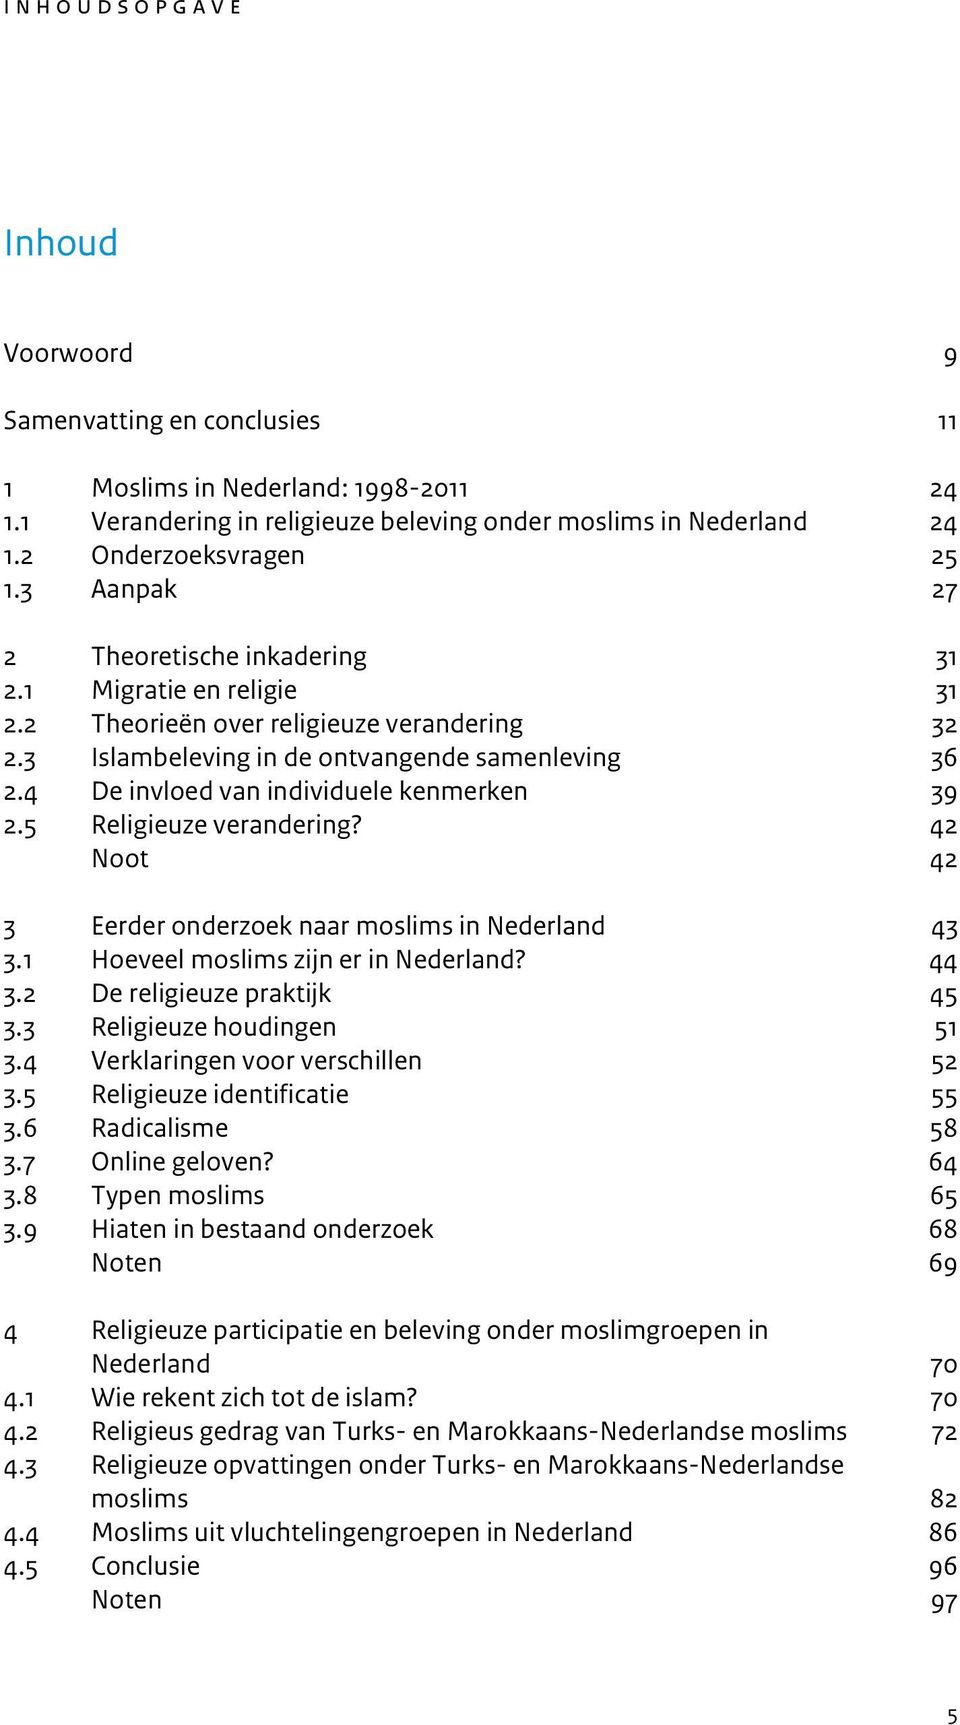 4 De invloed van individuele kenmerken 39 2.5 Religieuze verandering? 42 Noot 42 3 Eerder onderzoek naar moslims in Nederland 43 3.1 Hoeveel moslims zijn er in Nederland? 44 3.